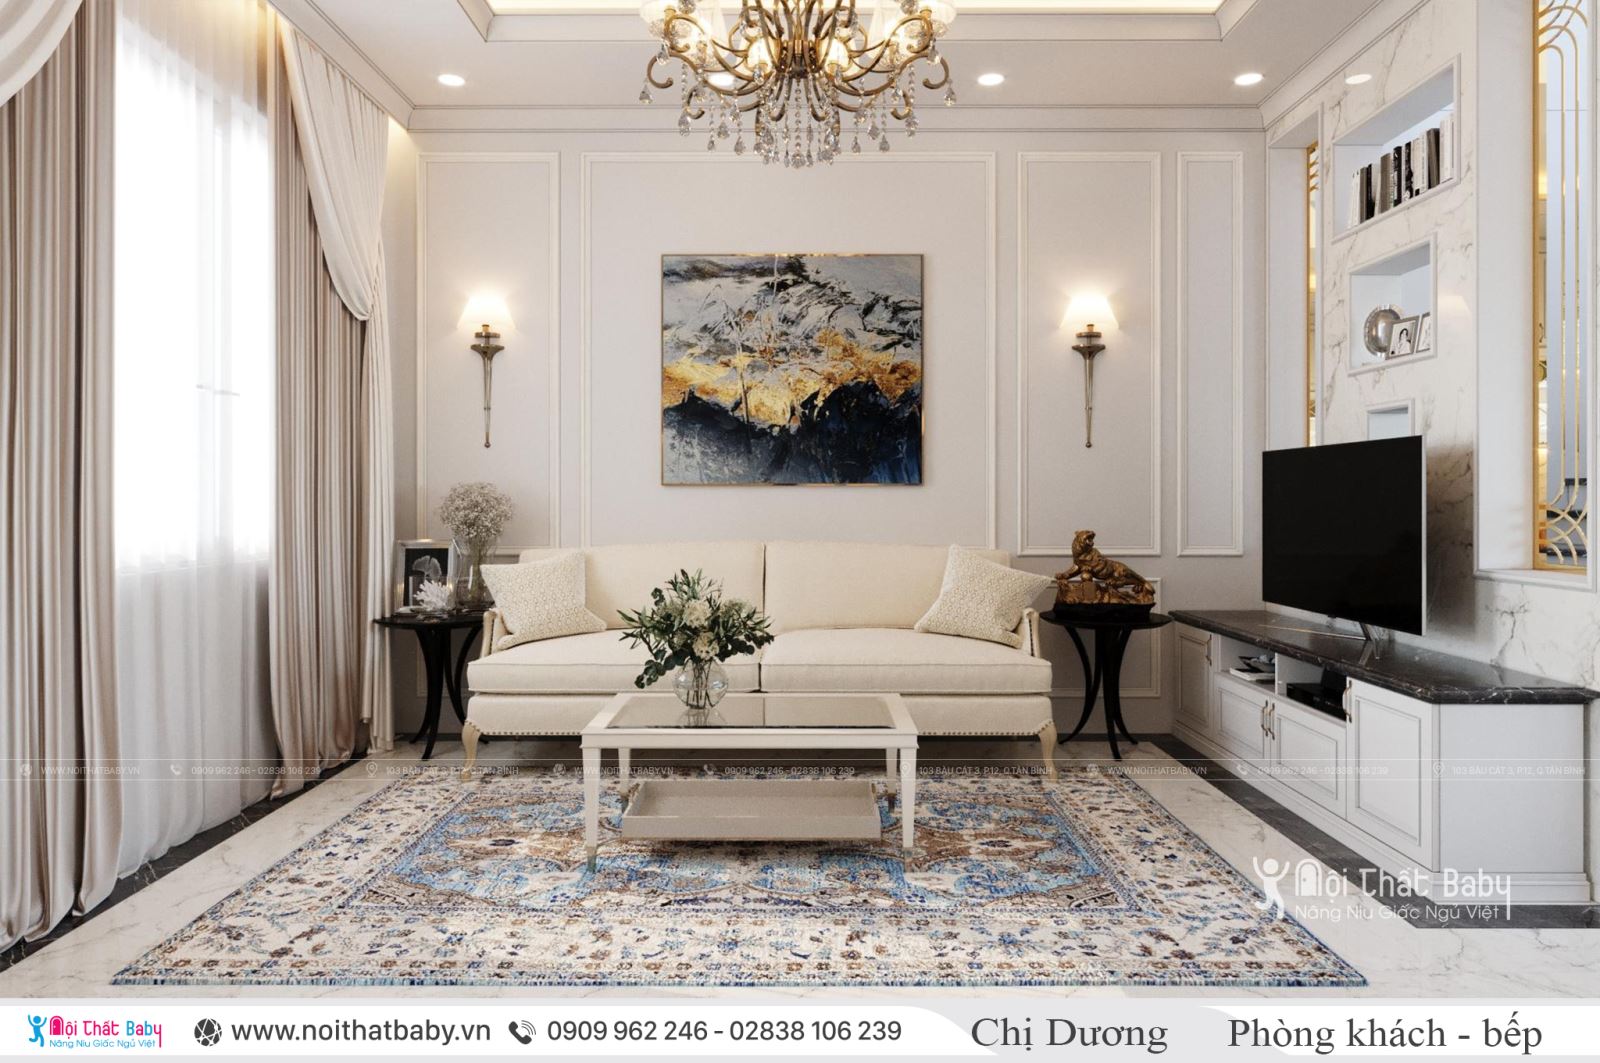 Thiết kế và thi công nội thất trọn gói căn hộ Verosa Khang Điền - Quận 9